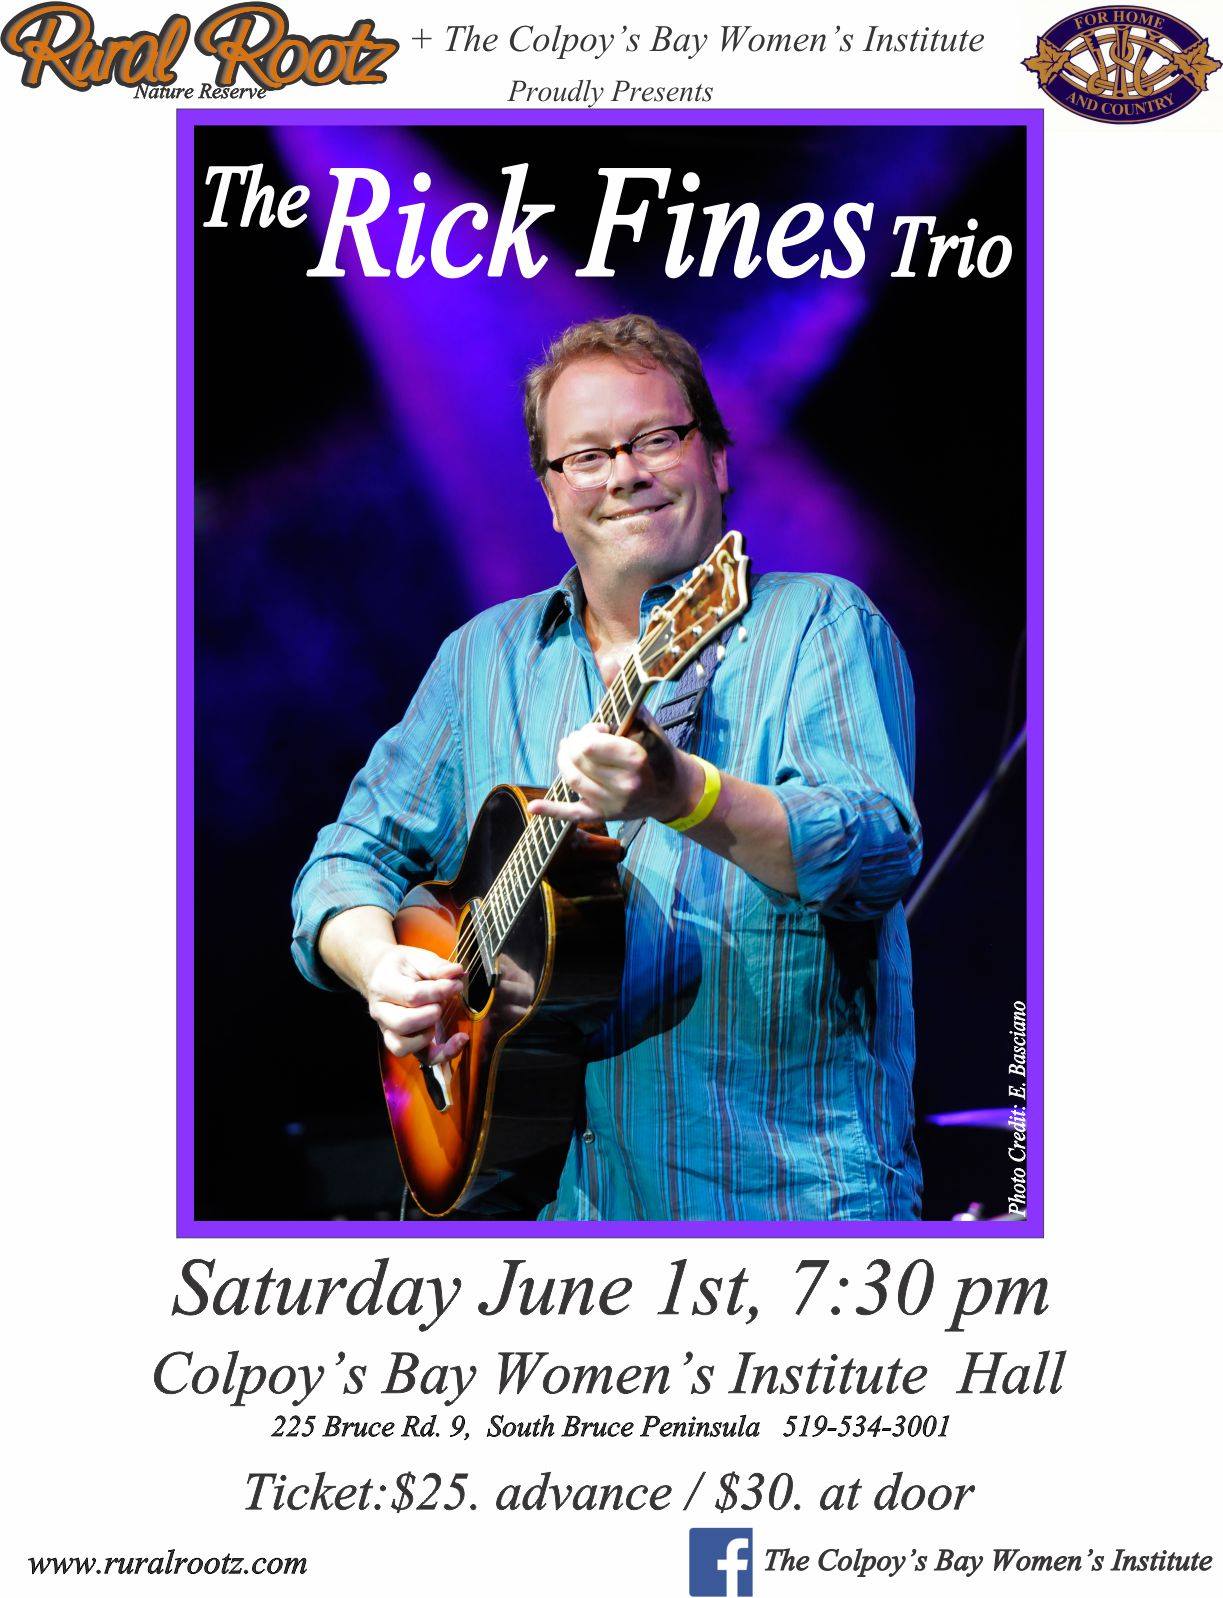 The Rick Fines Trio